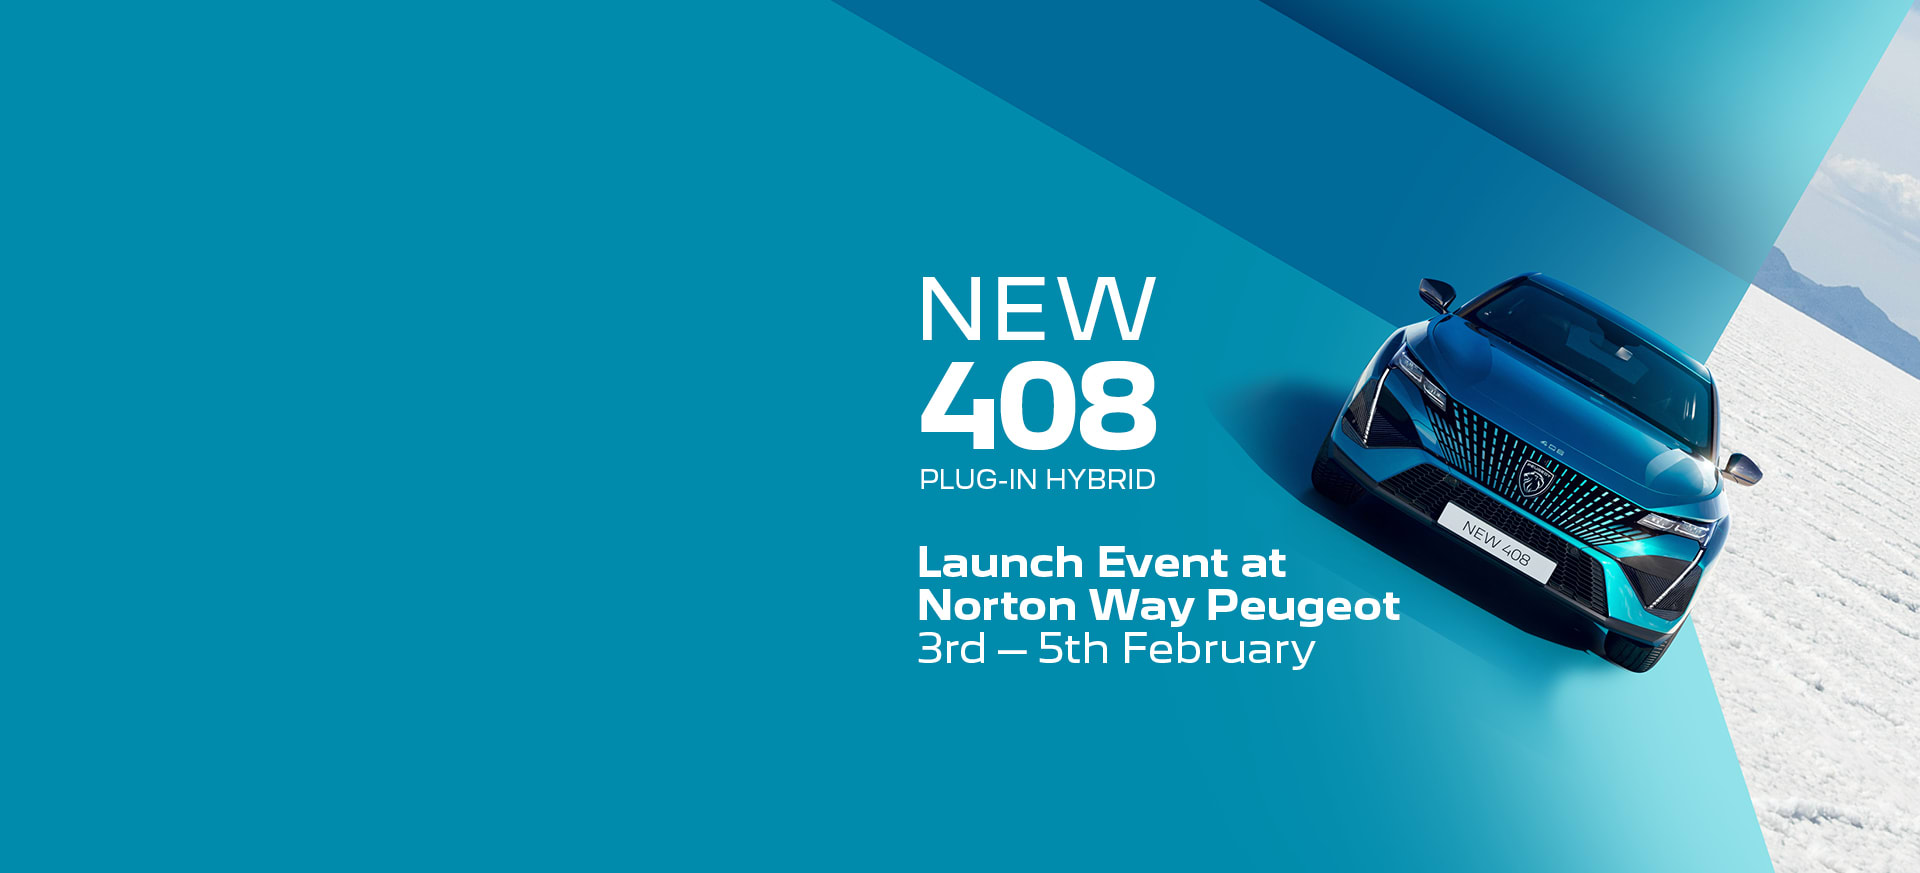 Norton Way Peugeot 408 Launch Event